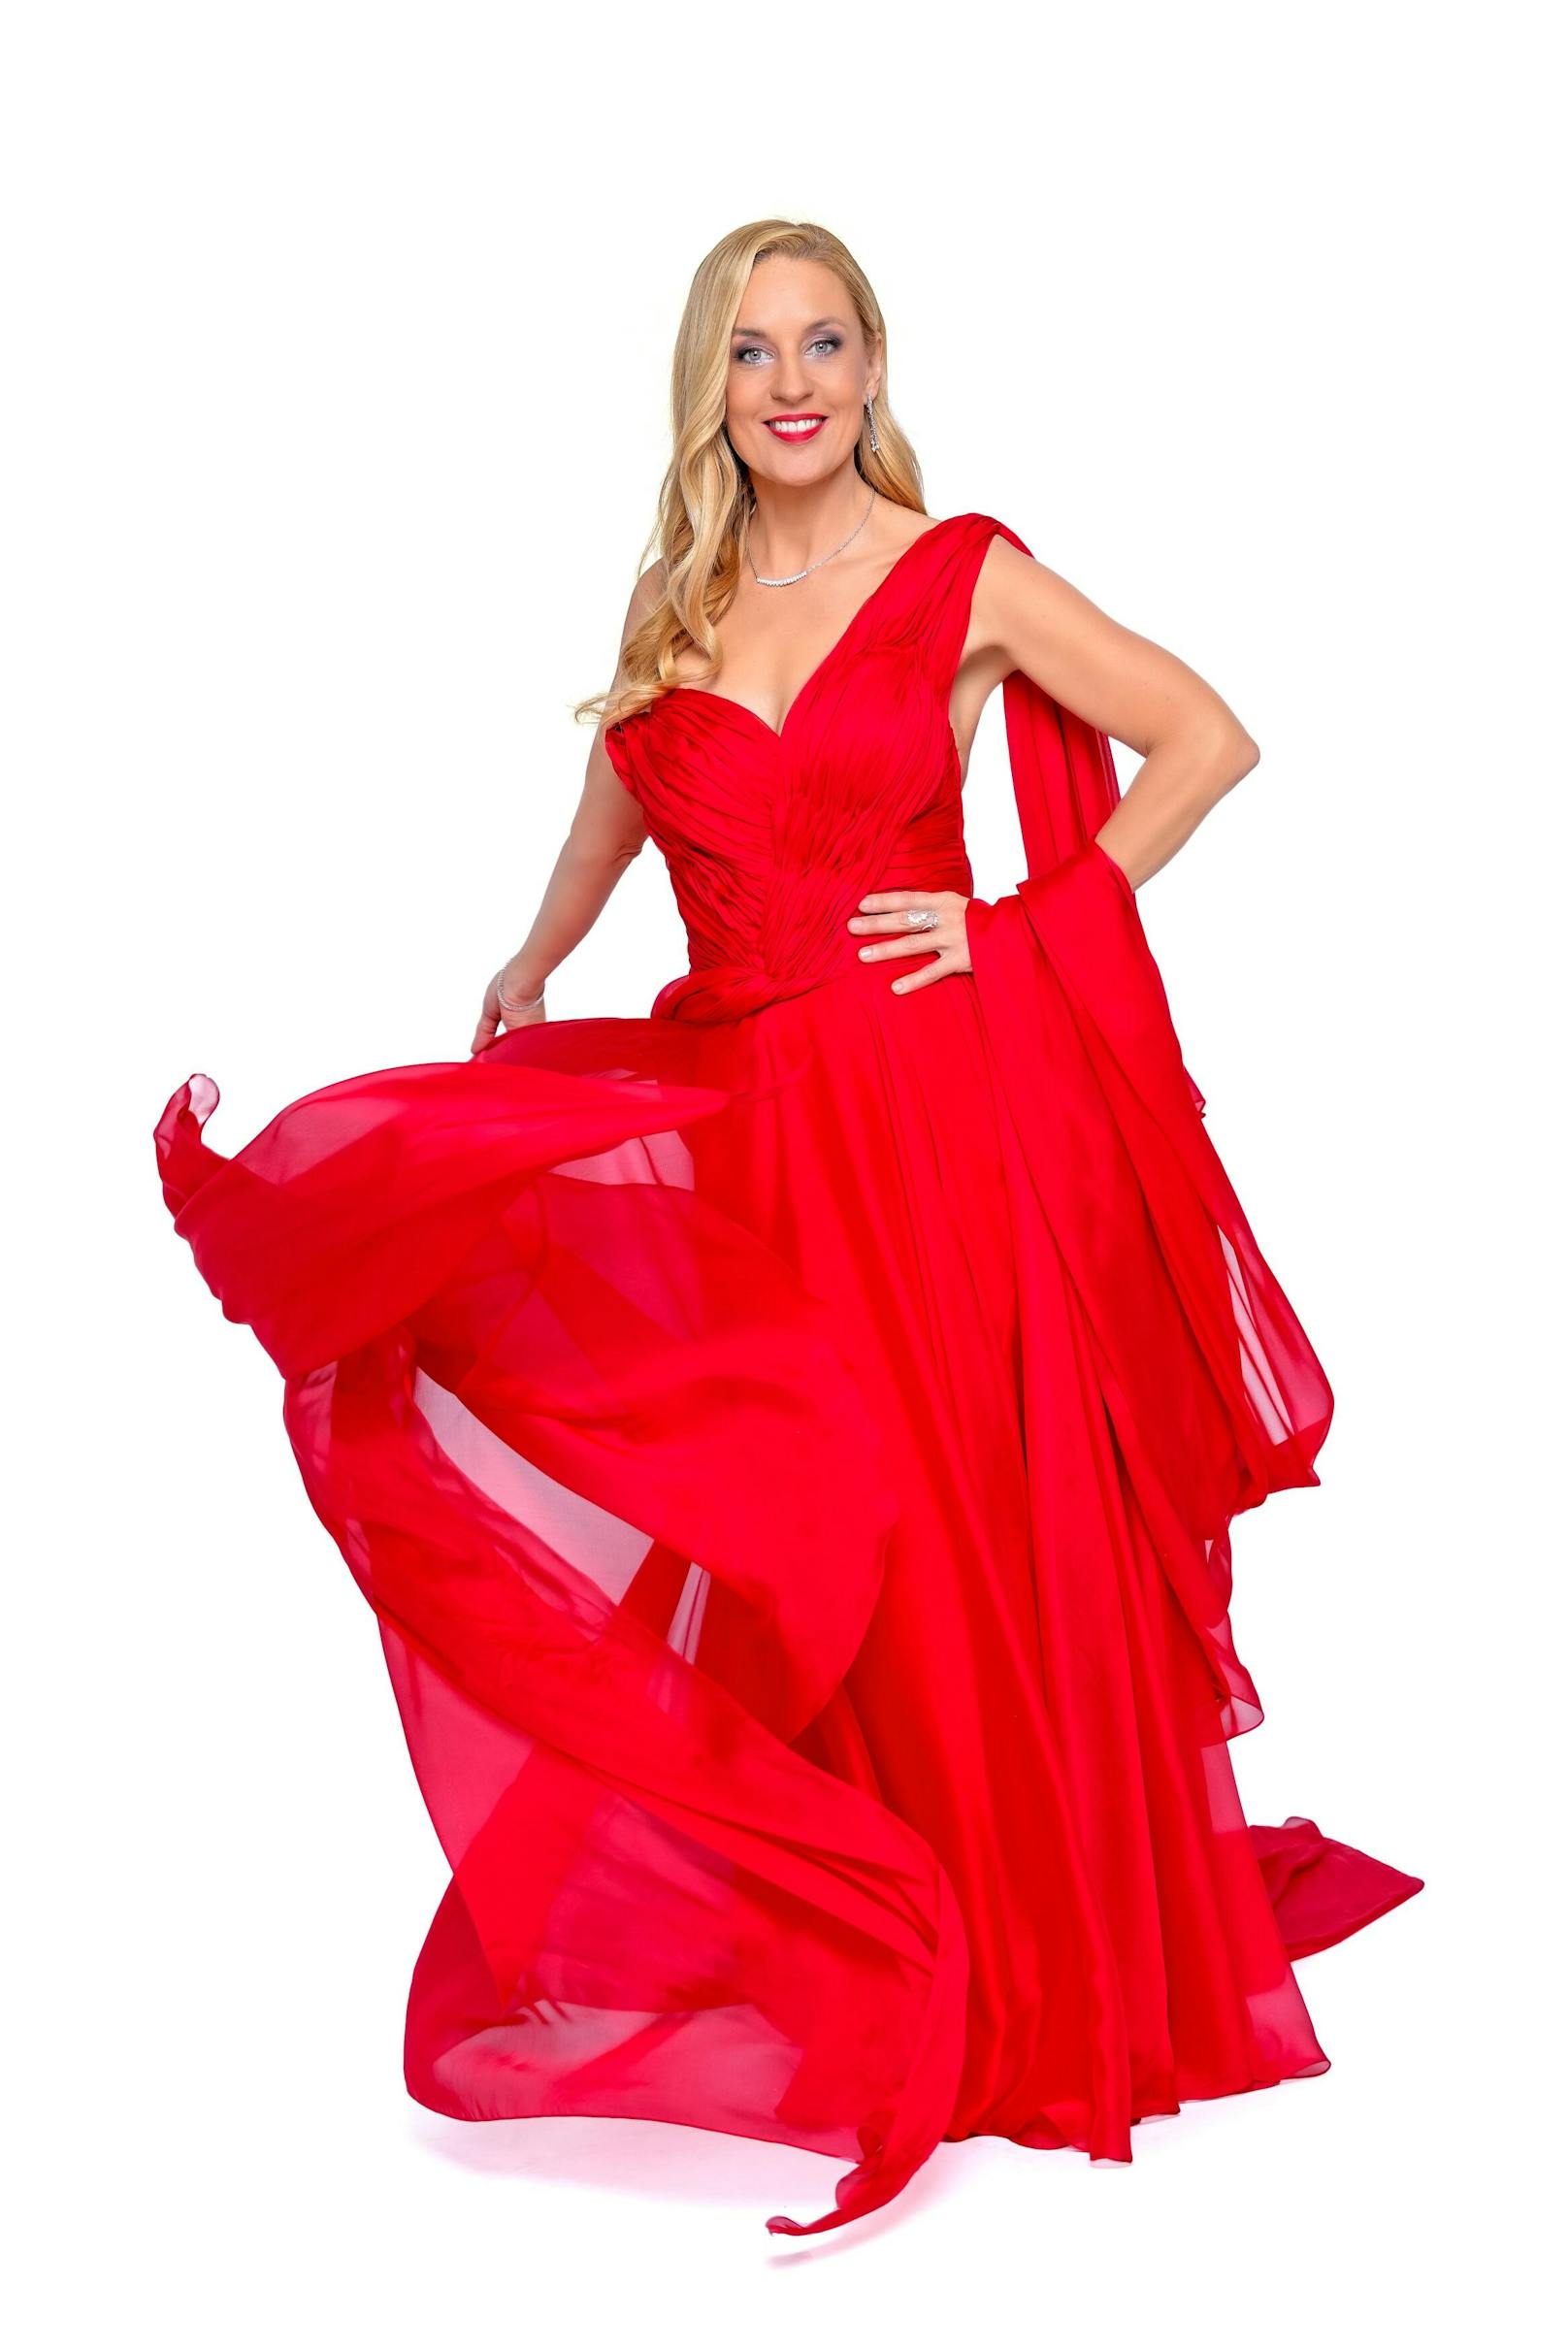 Schauspielerin Lilian Klebow hat sich für ein feurig rotes, fließendes Kleid entschieden.  